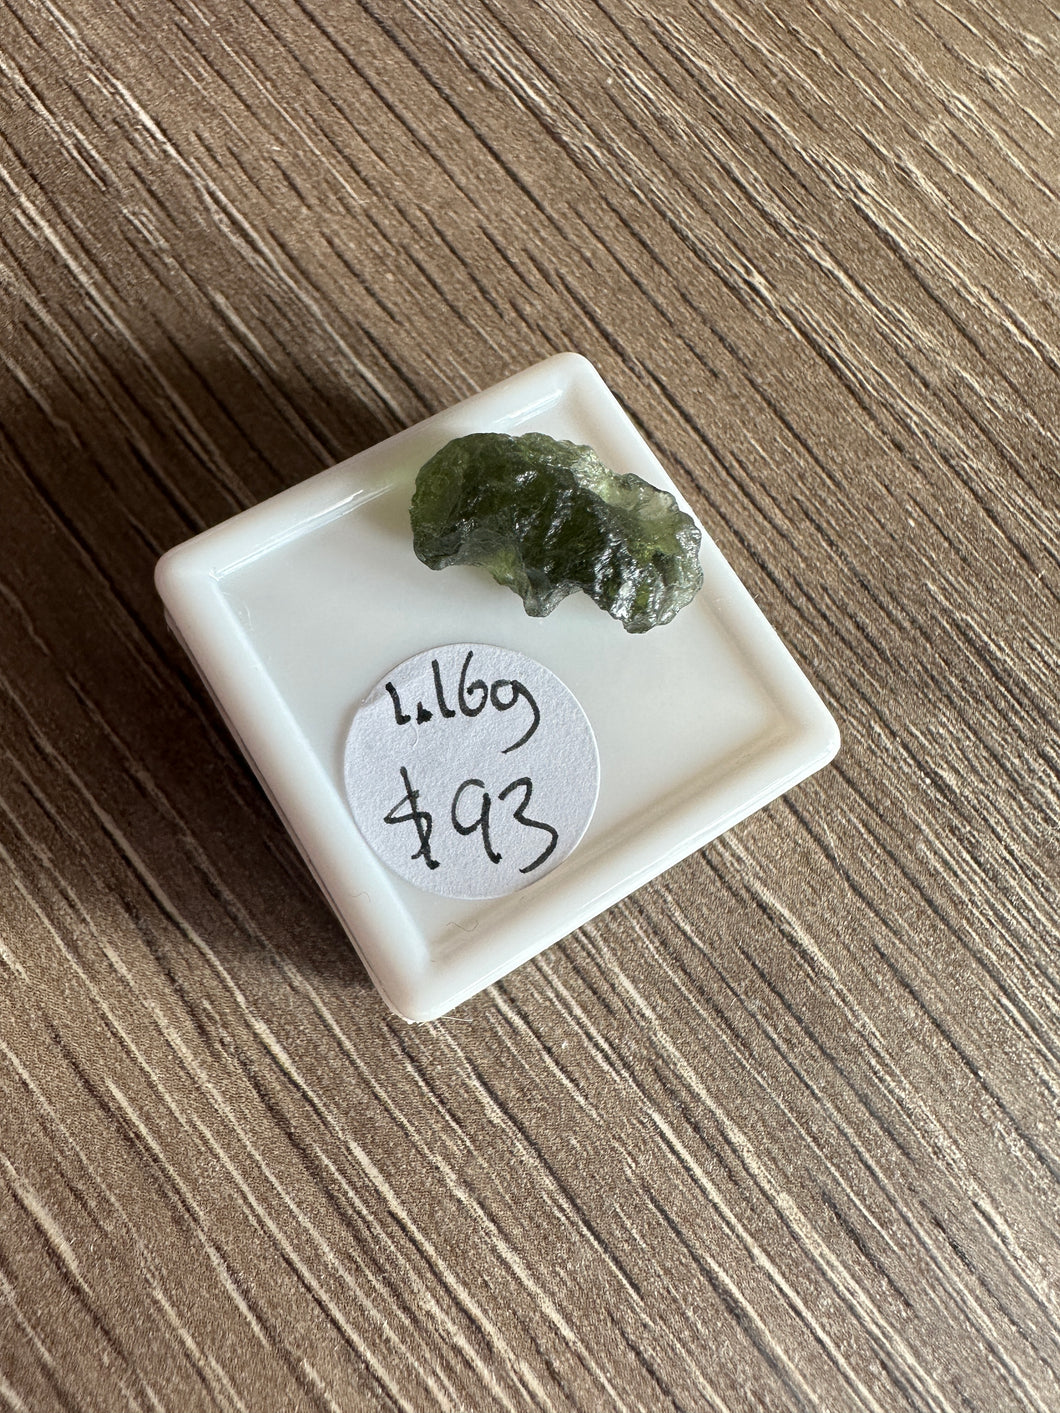 1.16g raw moldavite